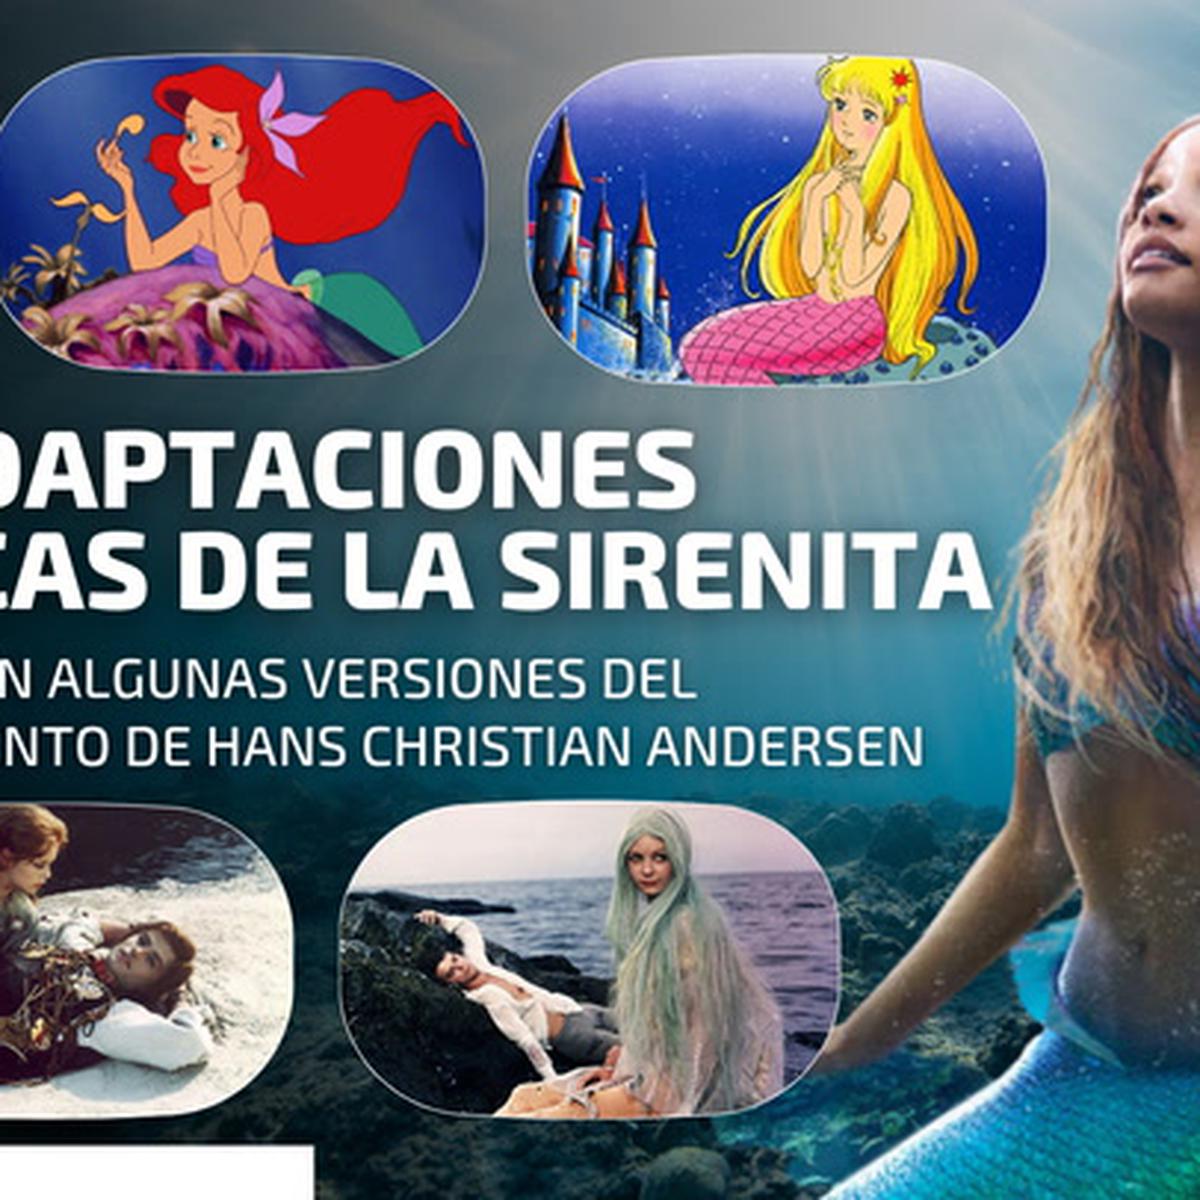 Verdadera historia de La Sirenita según el cuento original